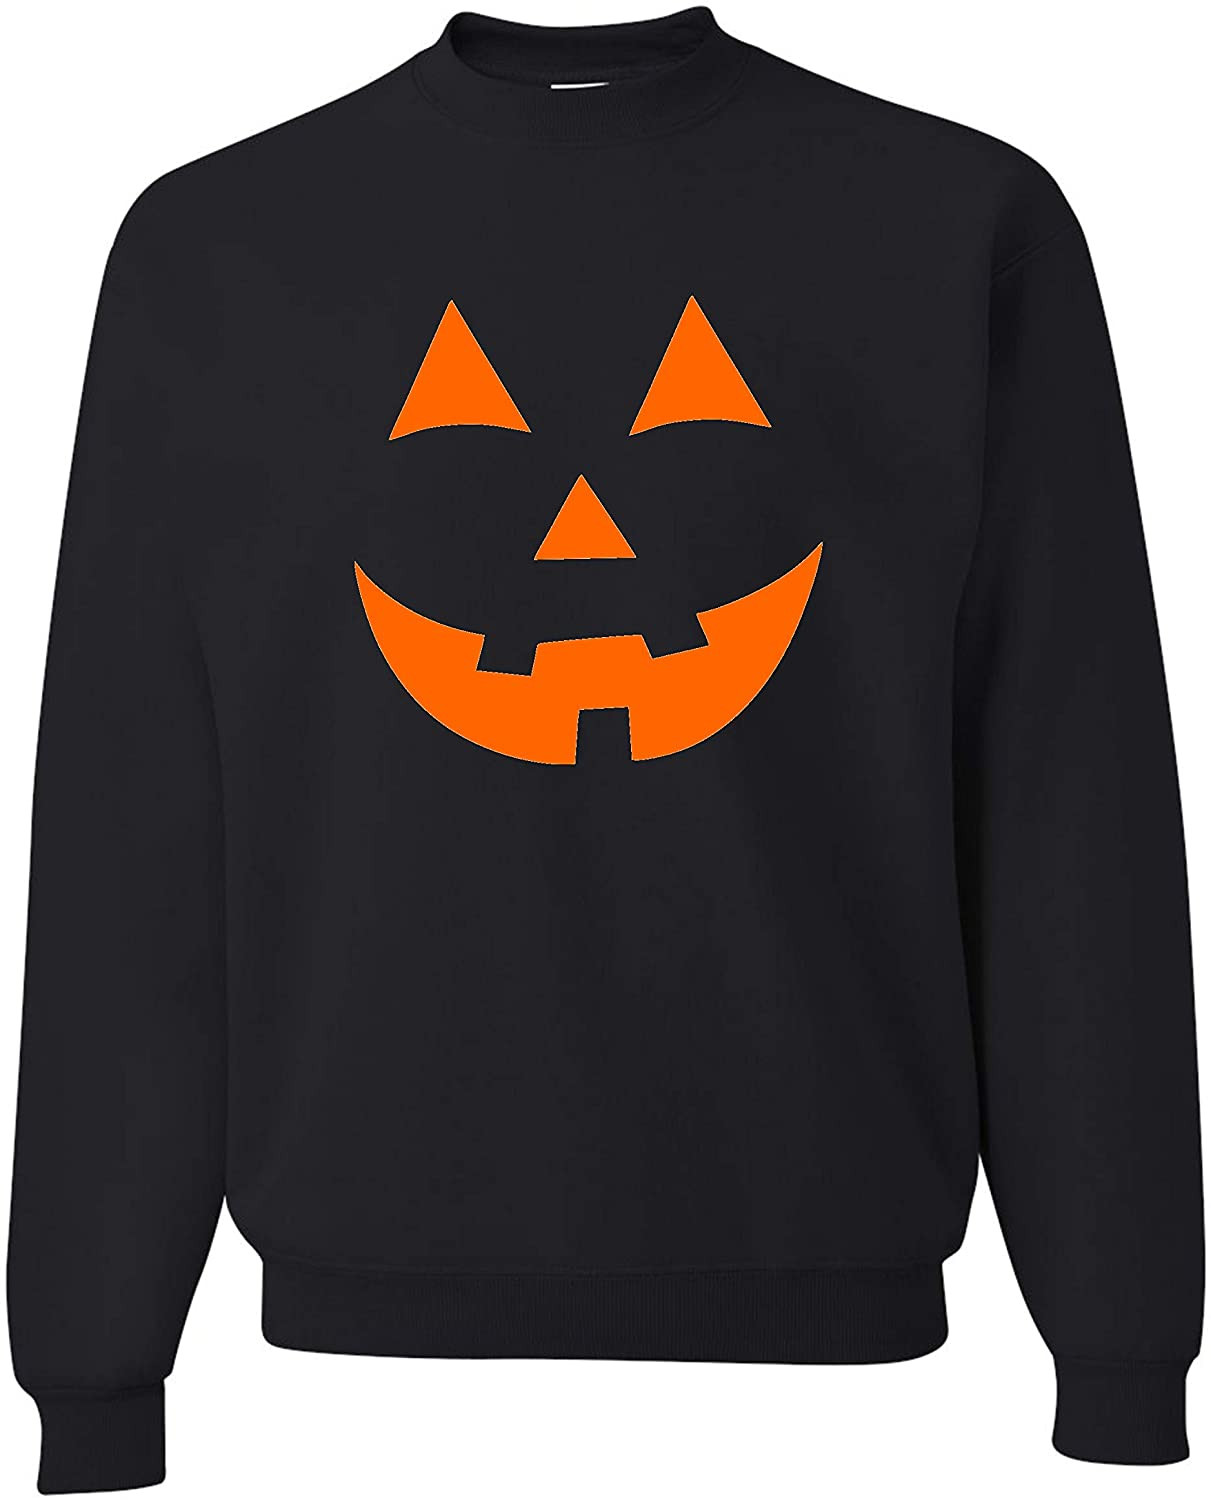 Jack O Lantern Pumpkin Face Halloween T-Shirt